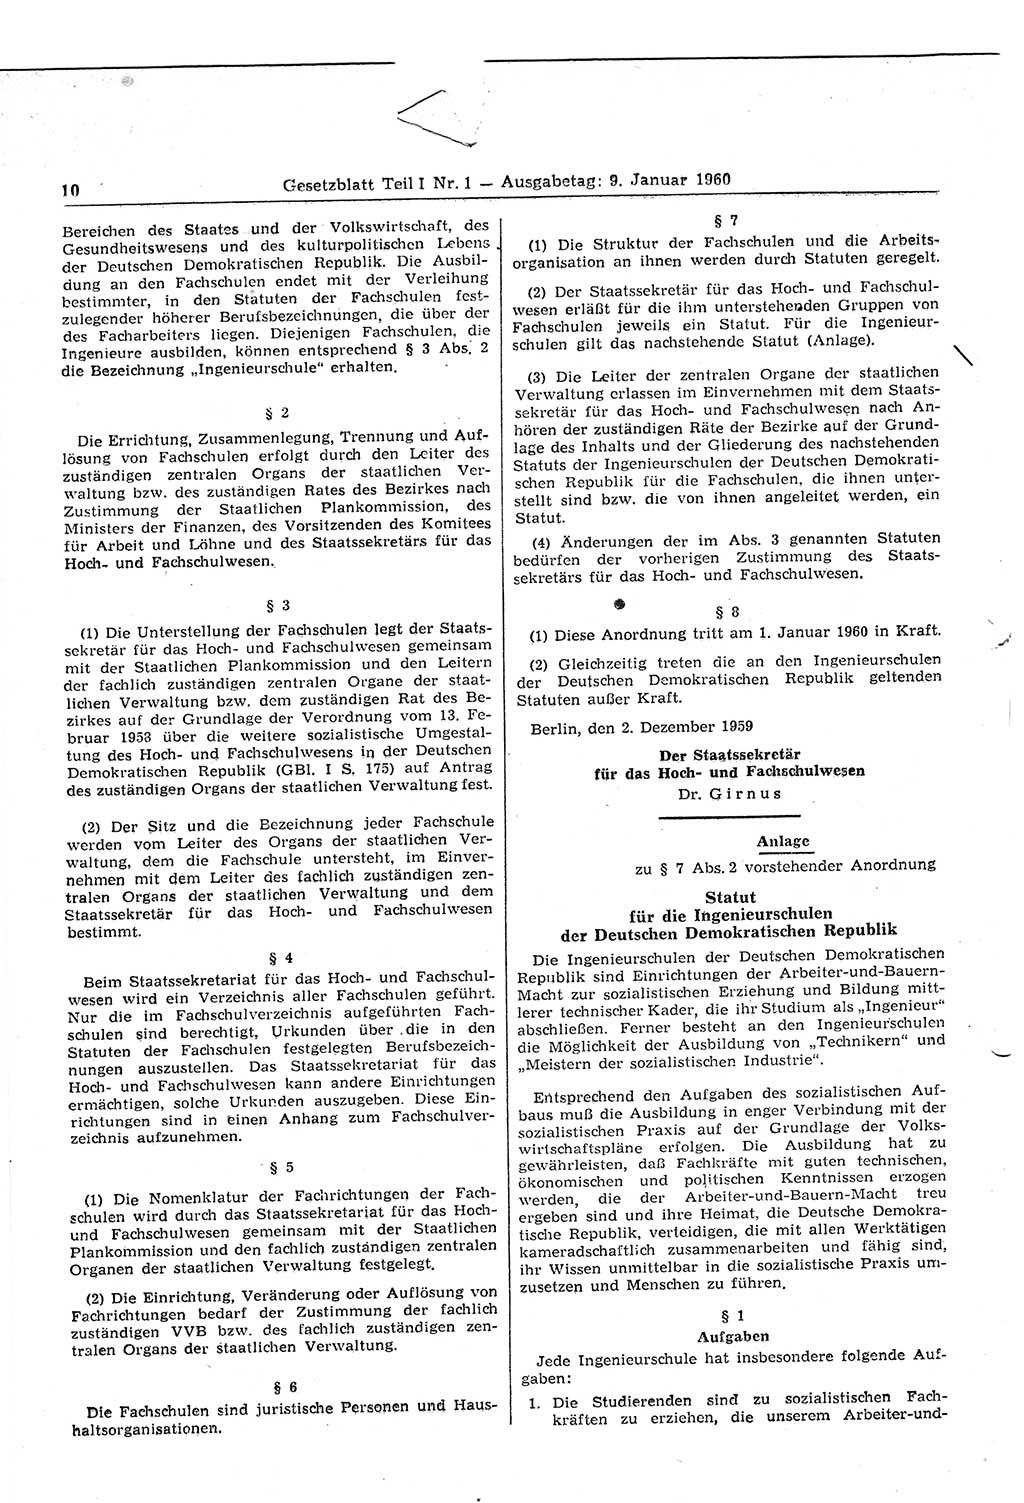 Gesetzblatt (GBl.) der Deutschen Demokratischen Republik (DDR) Teil Ⅰ 1960, Seite 10 (GBl. DDR Ⅰ 1960, S. 10)